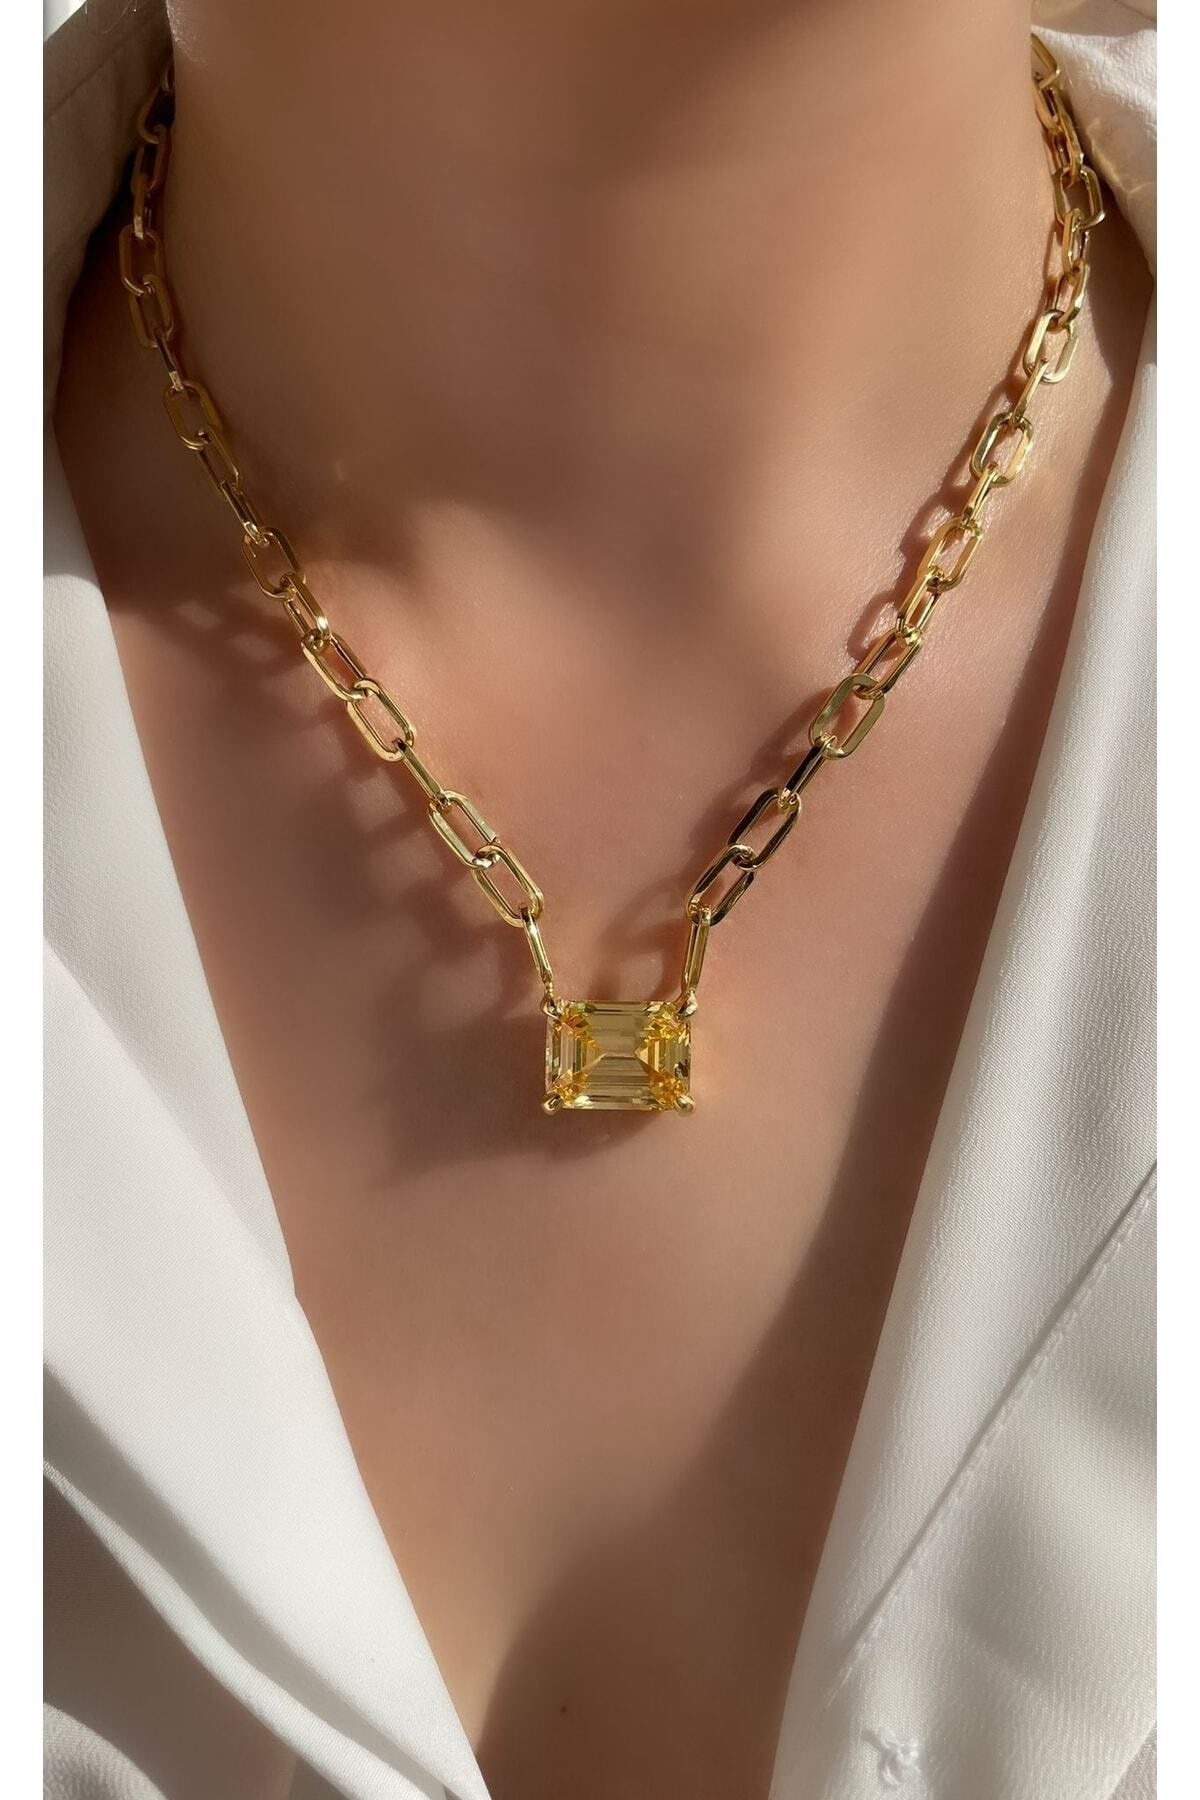 Luna Argento Jewelry Altın Kaplama Geo Zincir Sarı Renk Büyük Boy Dikdörtgen Model Paraıba Kolye 925 Ayar Gümüş